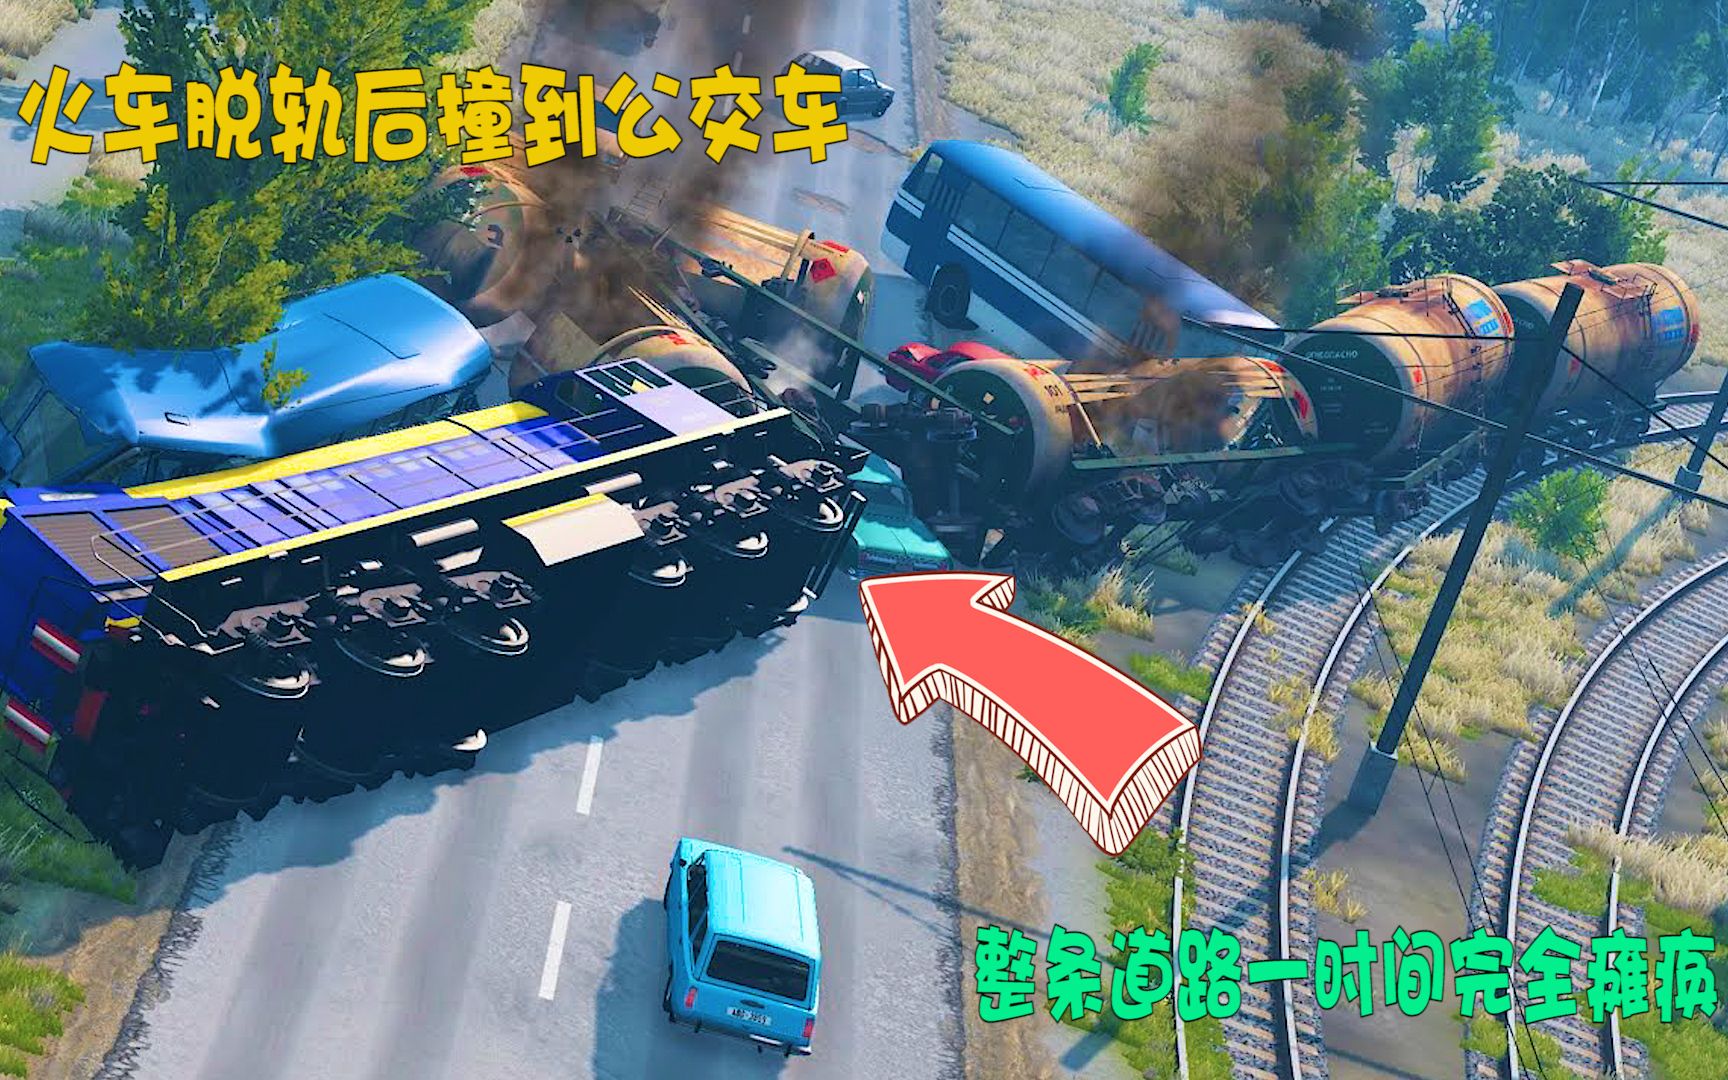 模拟器：火车脱轨后撞到公交车，整条道路一时间完全瘫痪.mp4